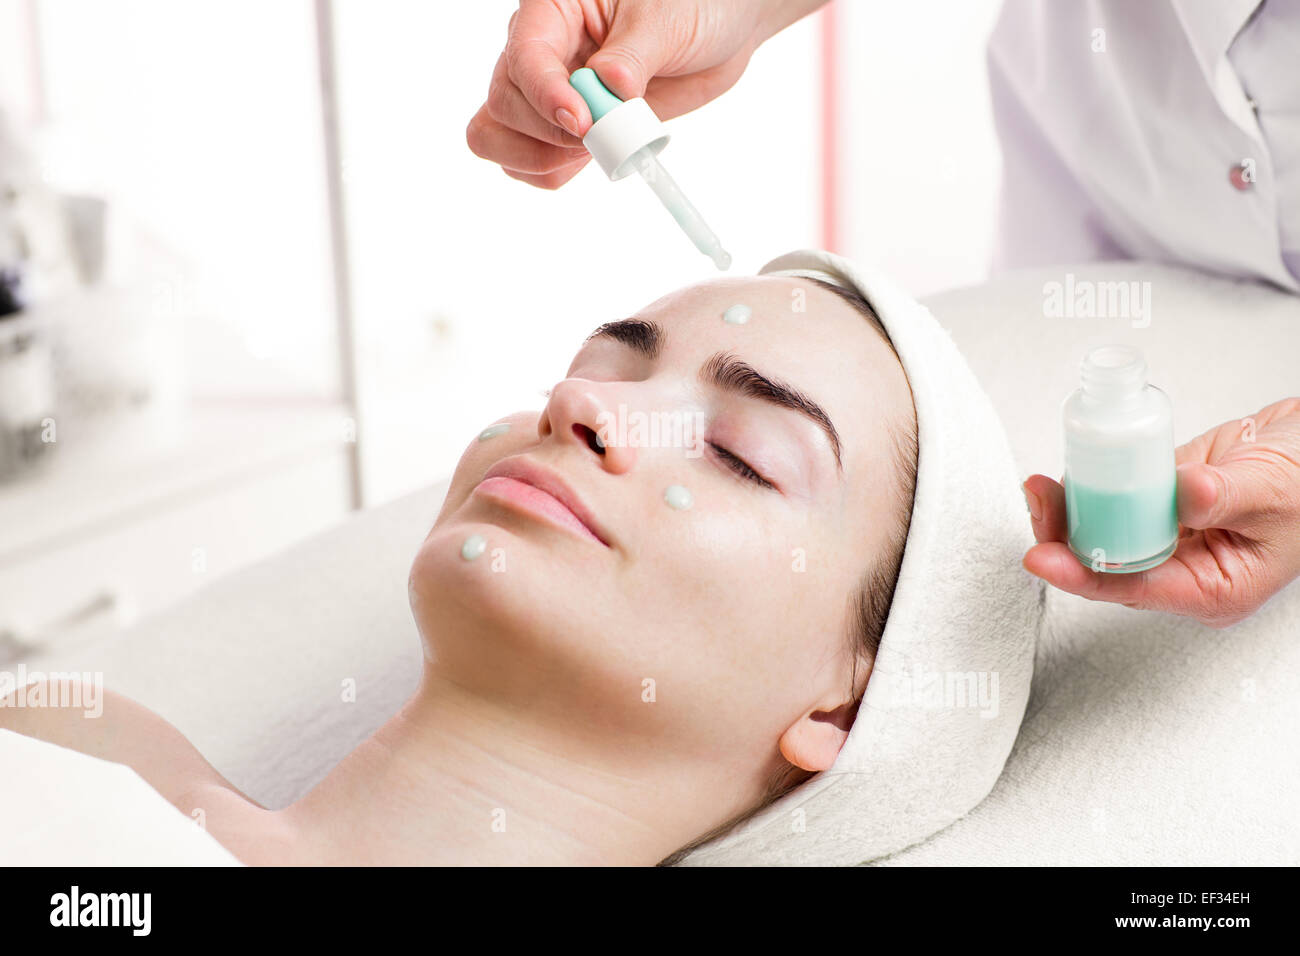 Suero tratamiento facial de la mujer joven en el salón spa Foto de stock